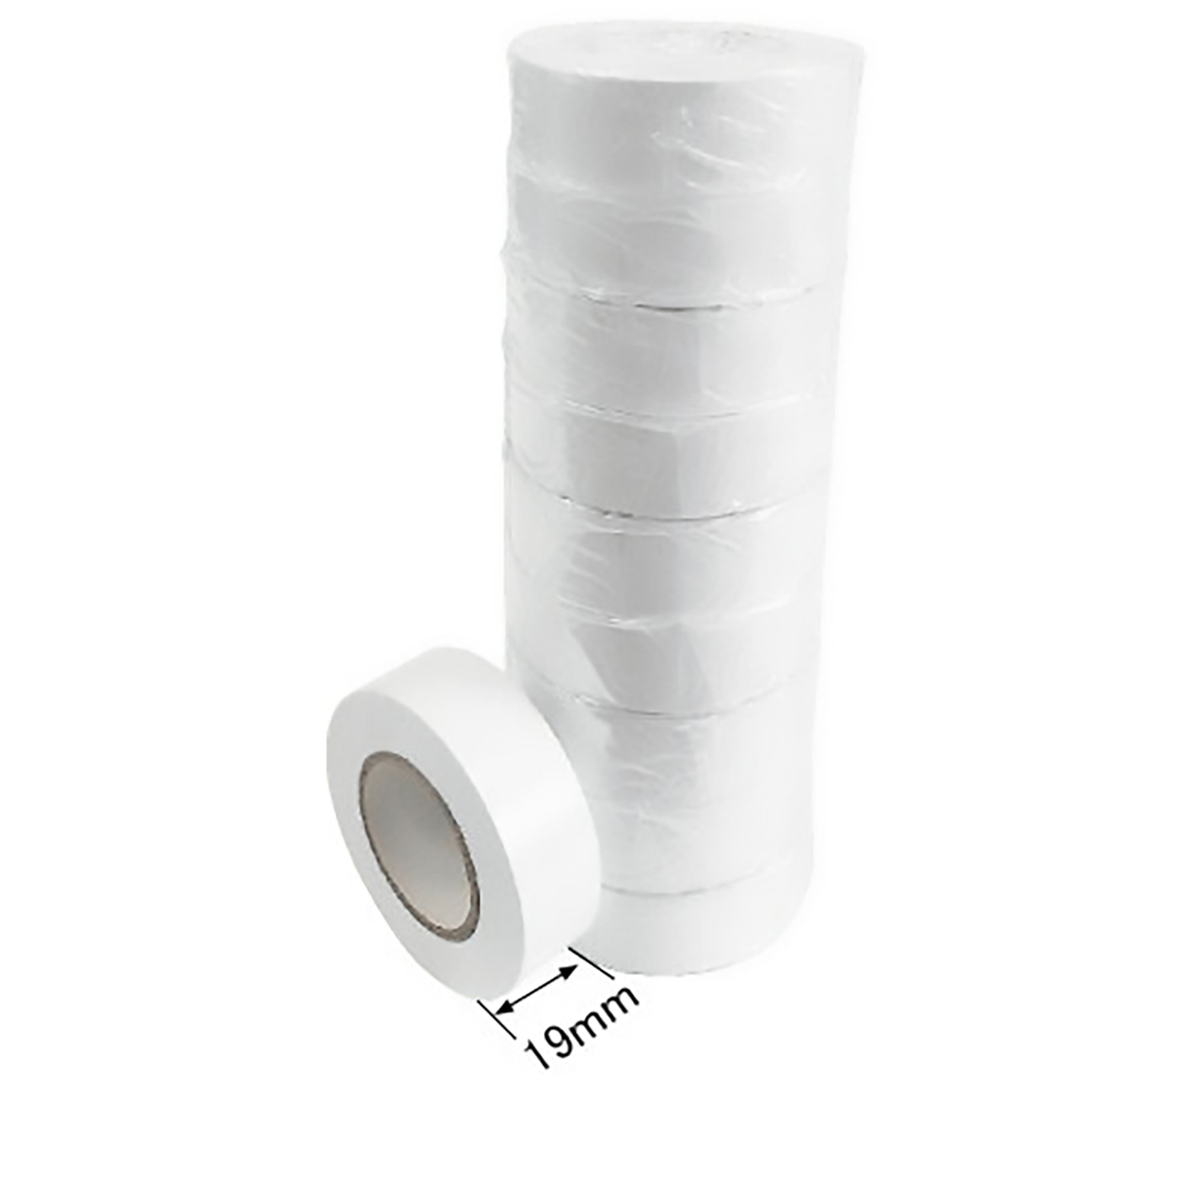 ビニールテープ JIS-C2336適合品 白色 10巻セット